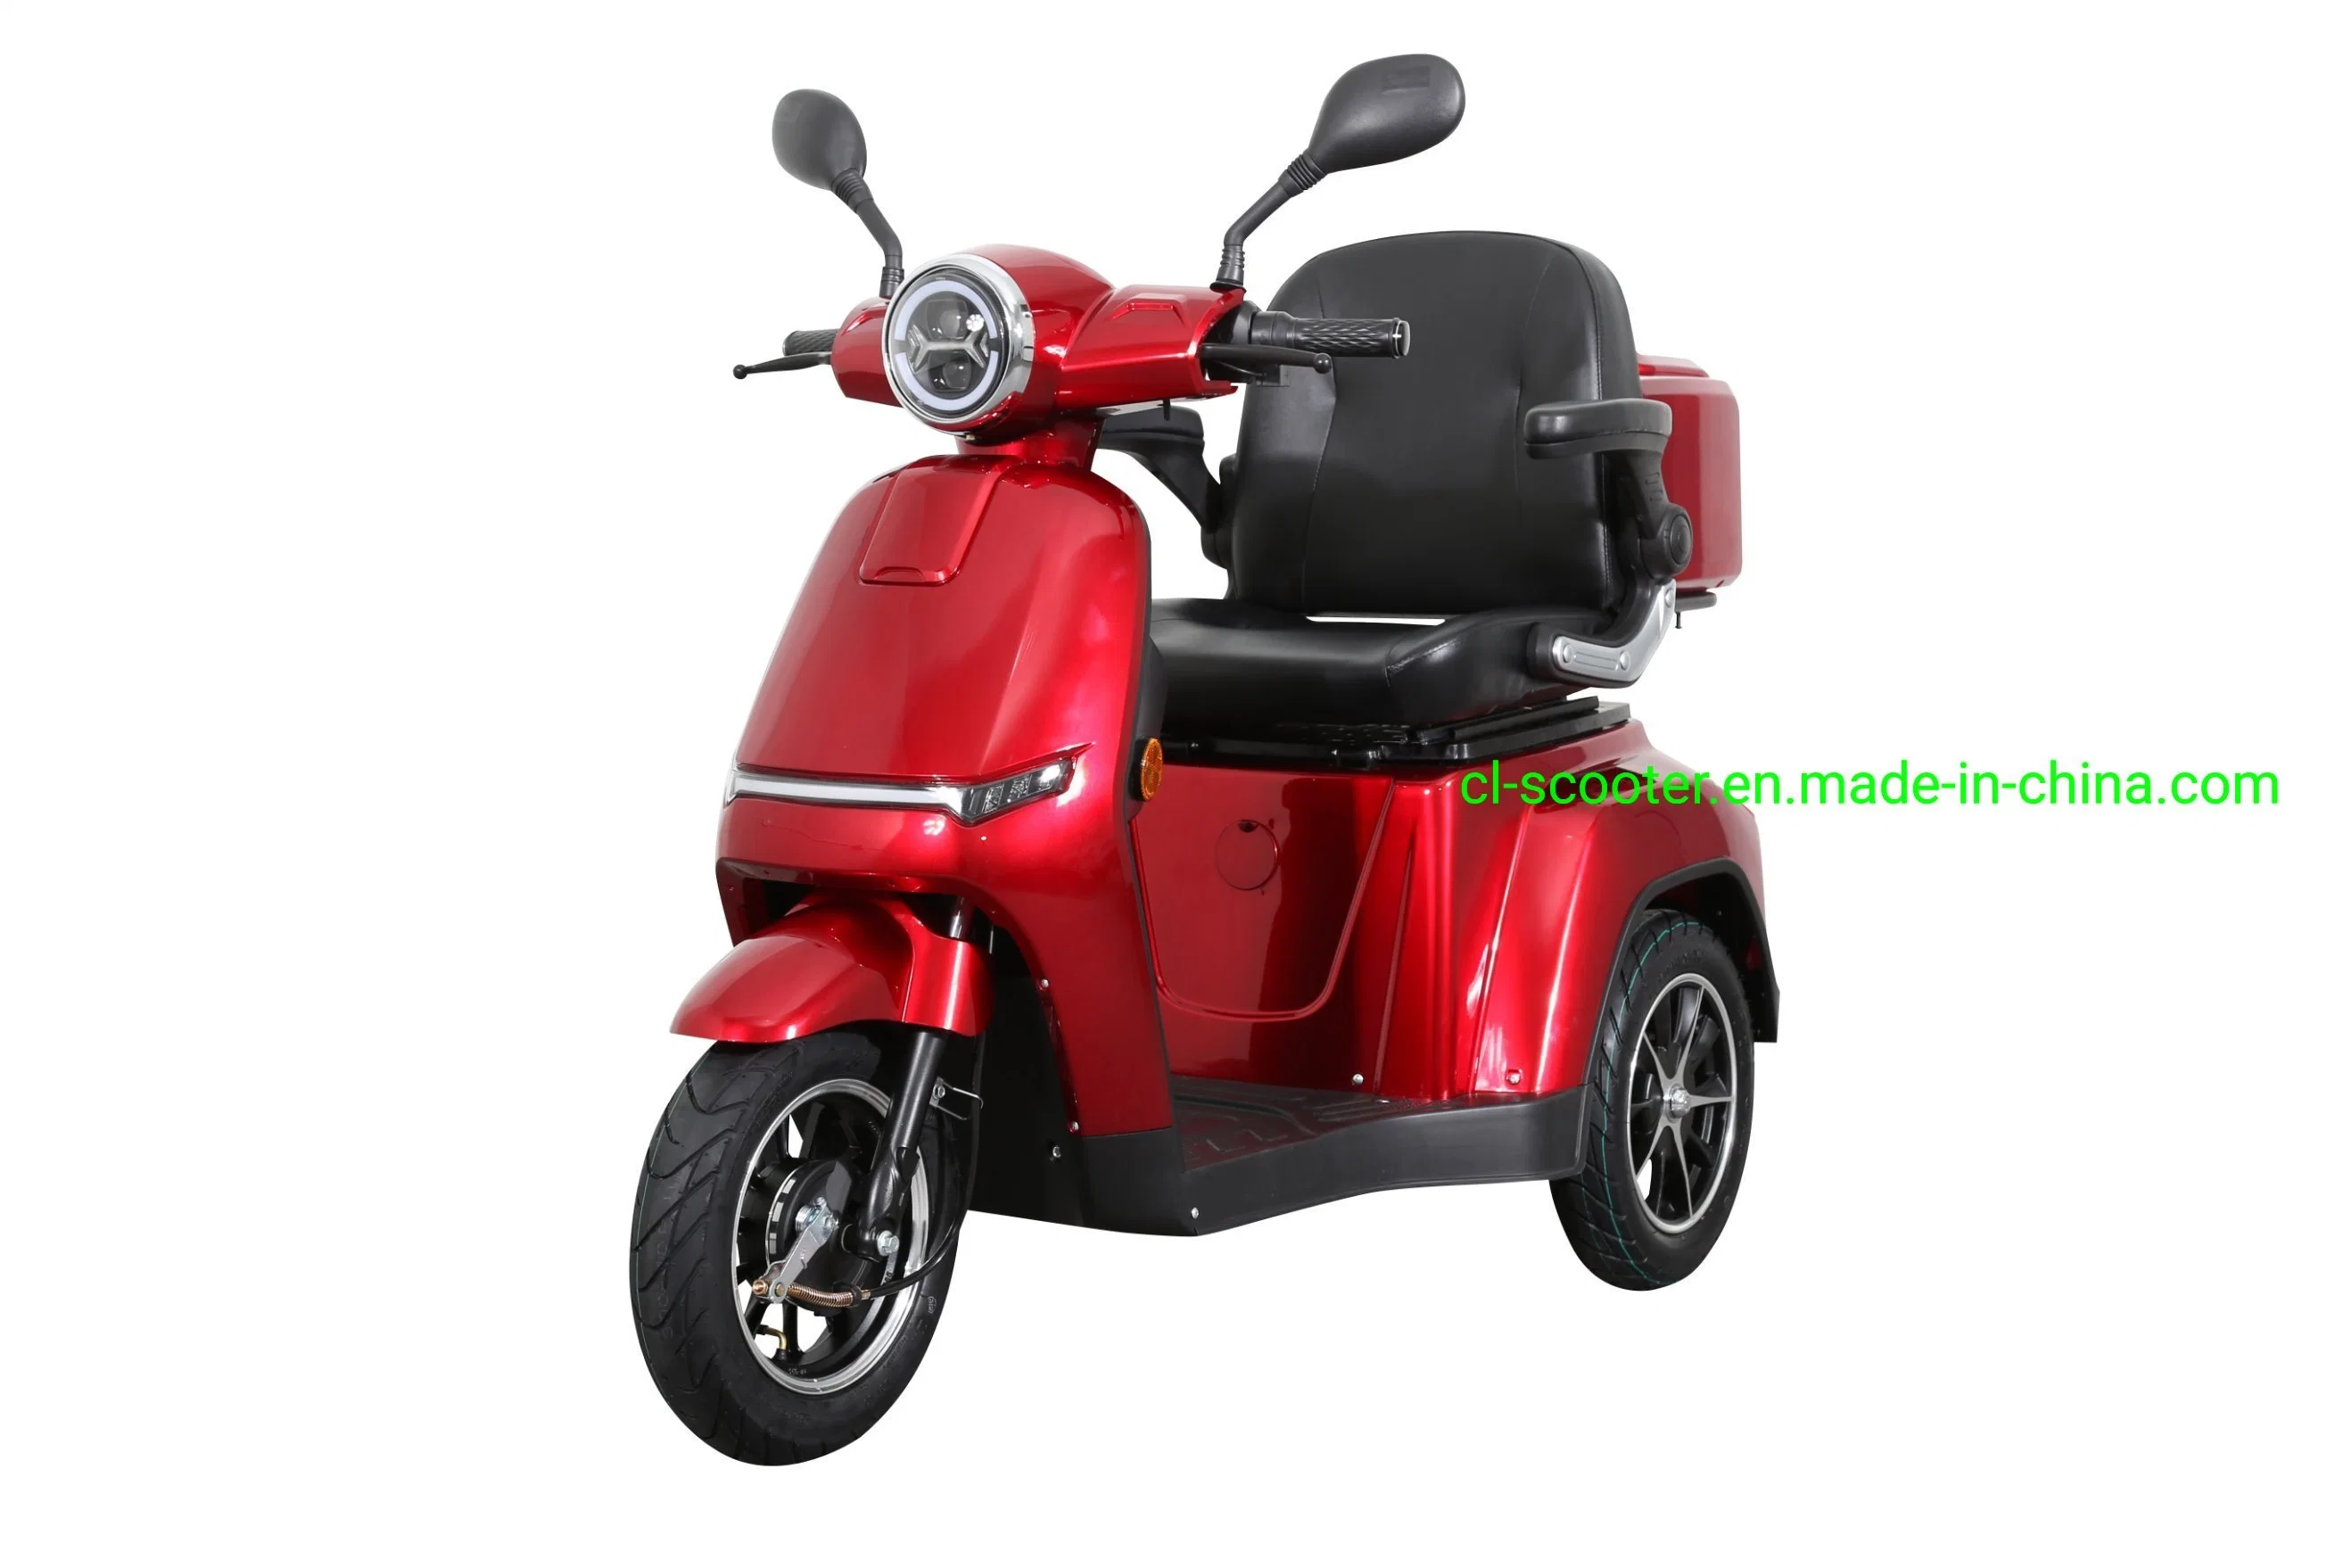 Scooter de movilidad eléctrica estándar EEC, motor de 1000W y velocidad máxima de 25km/h.